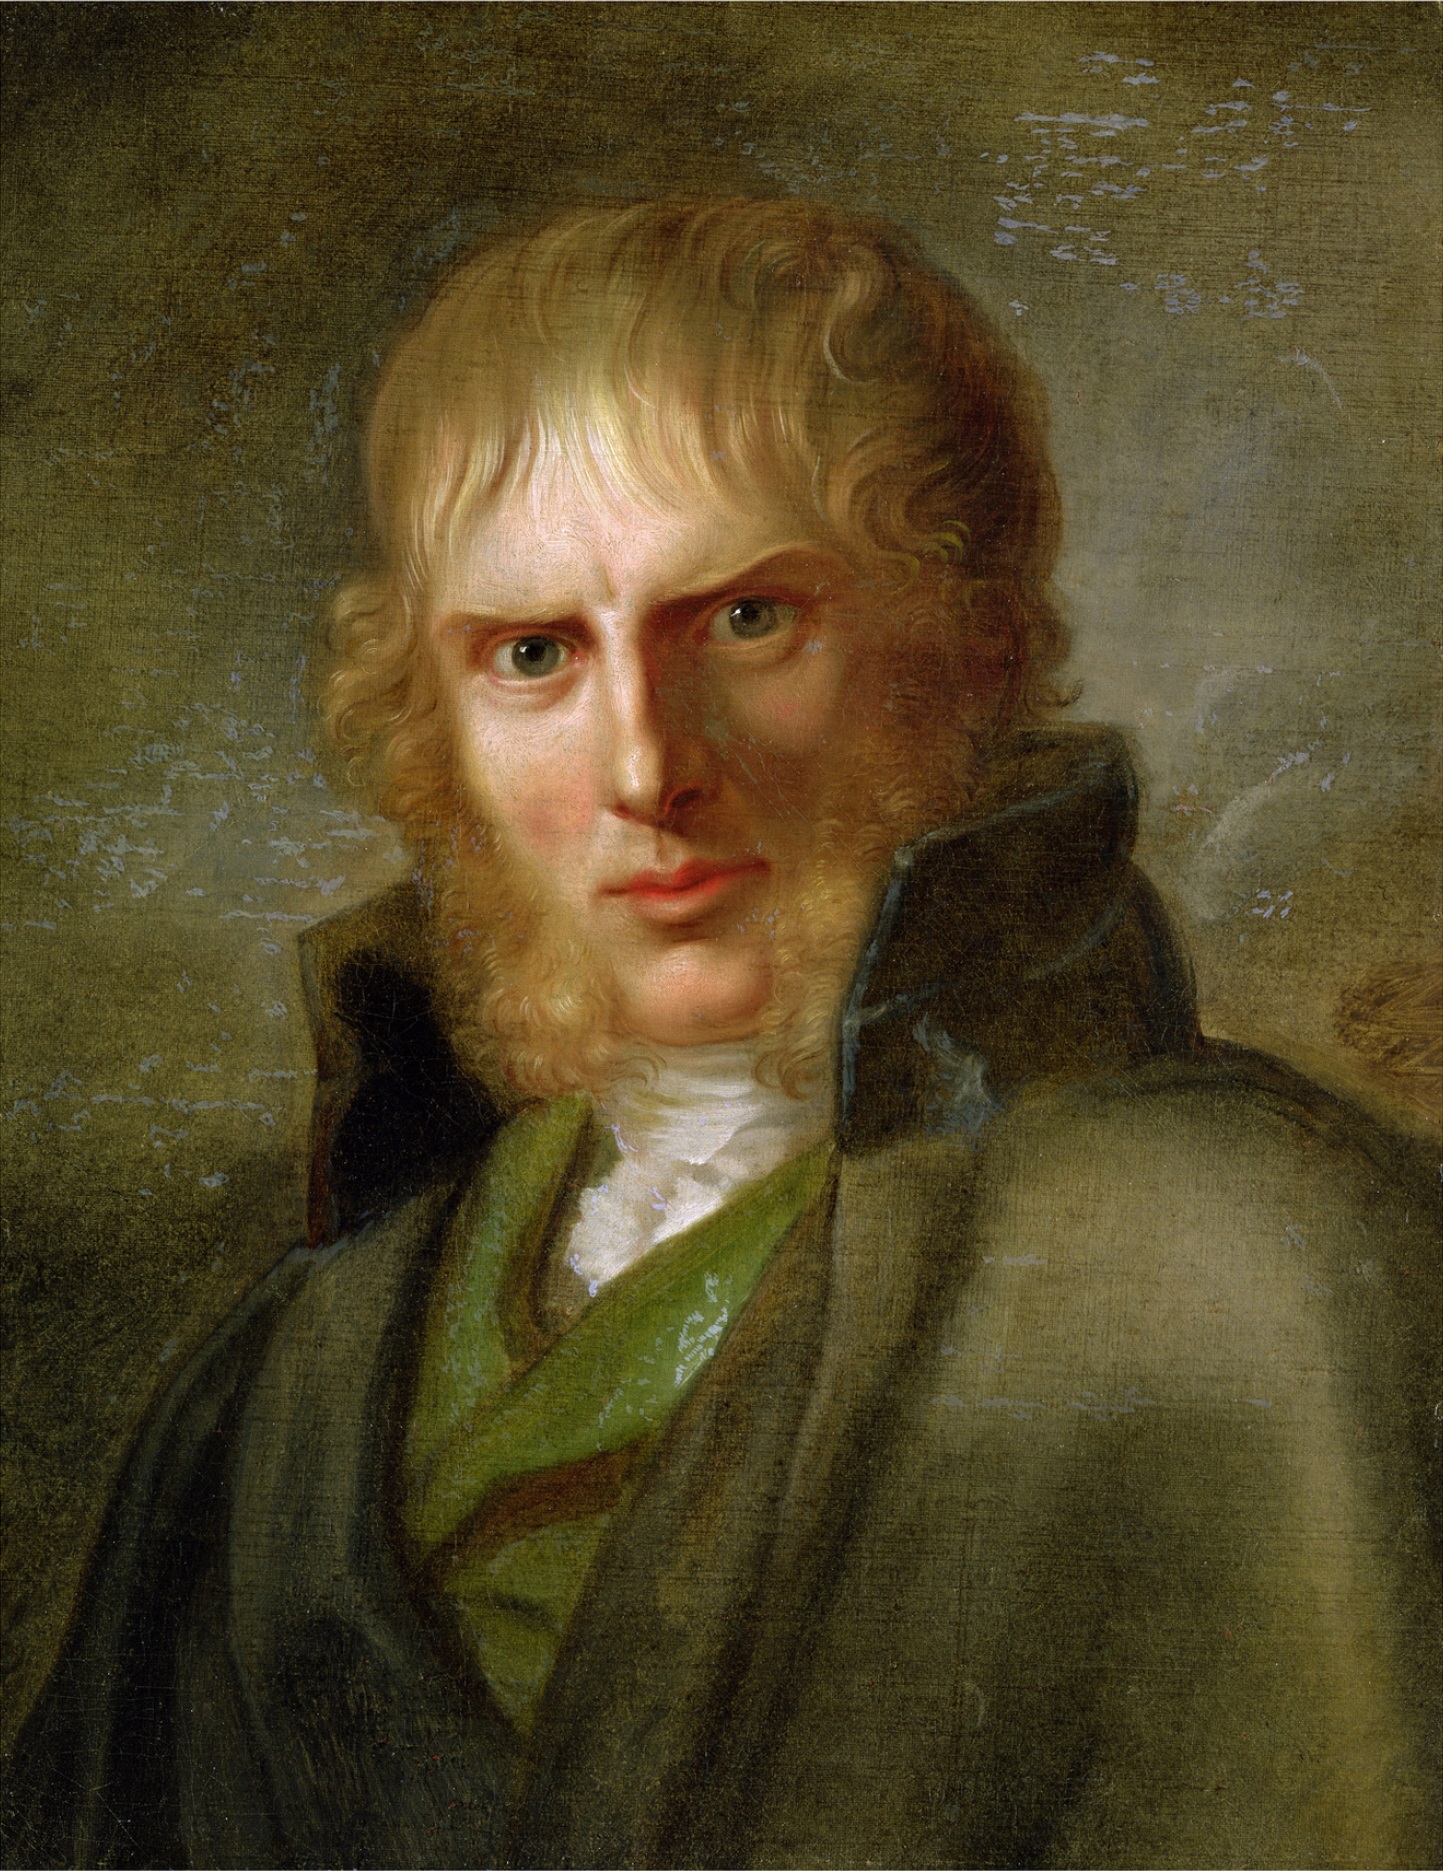 Caspar David Friedrich - 5 September 1774 - 7 May 1840